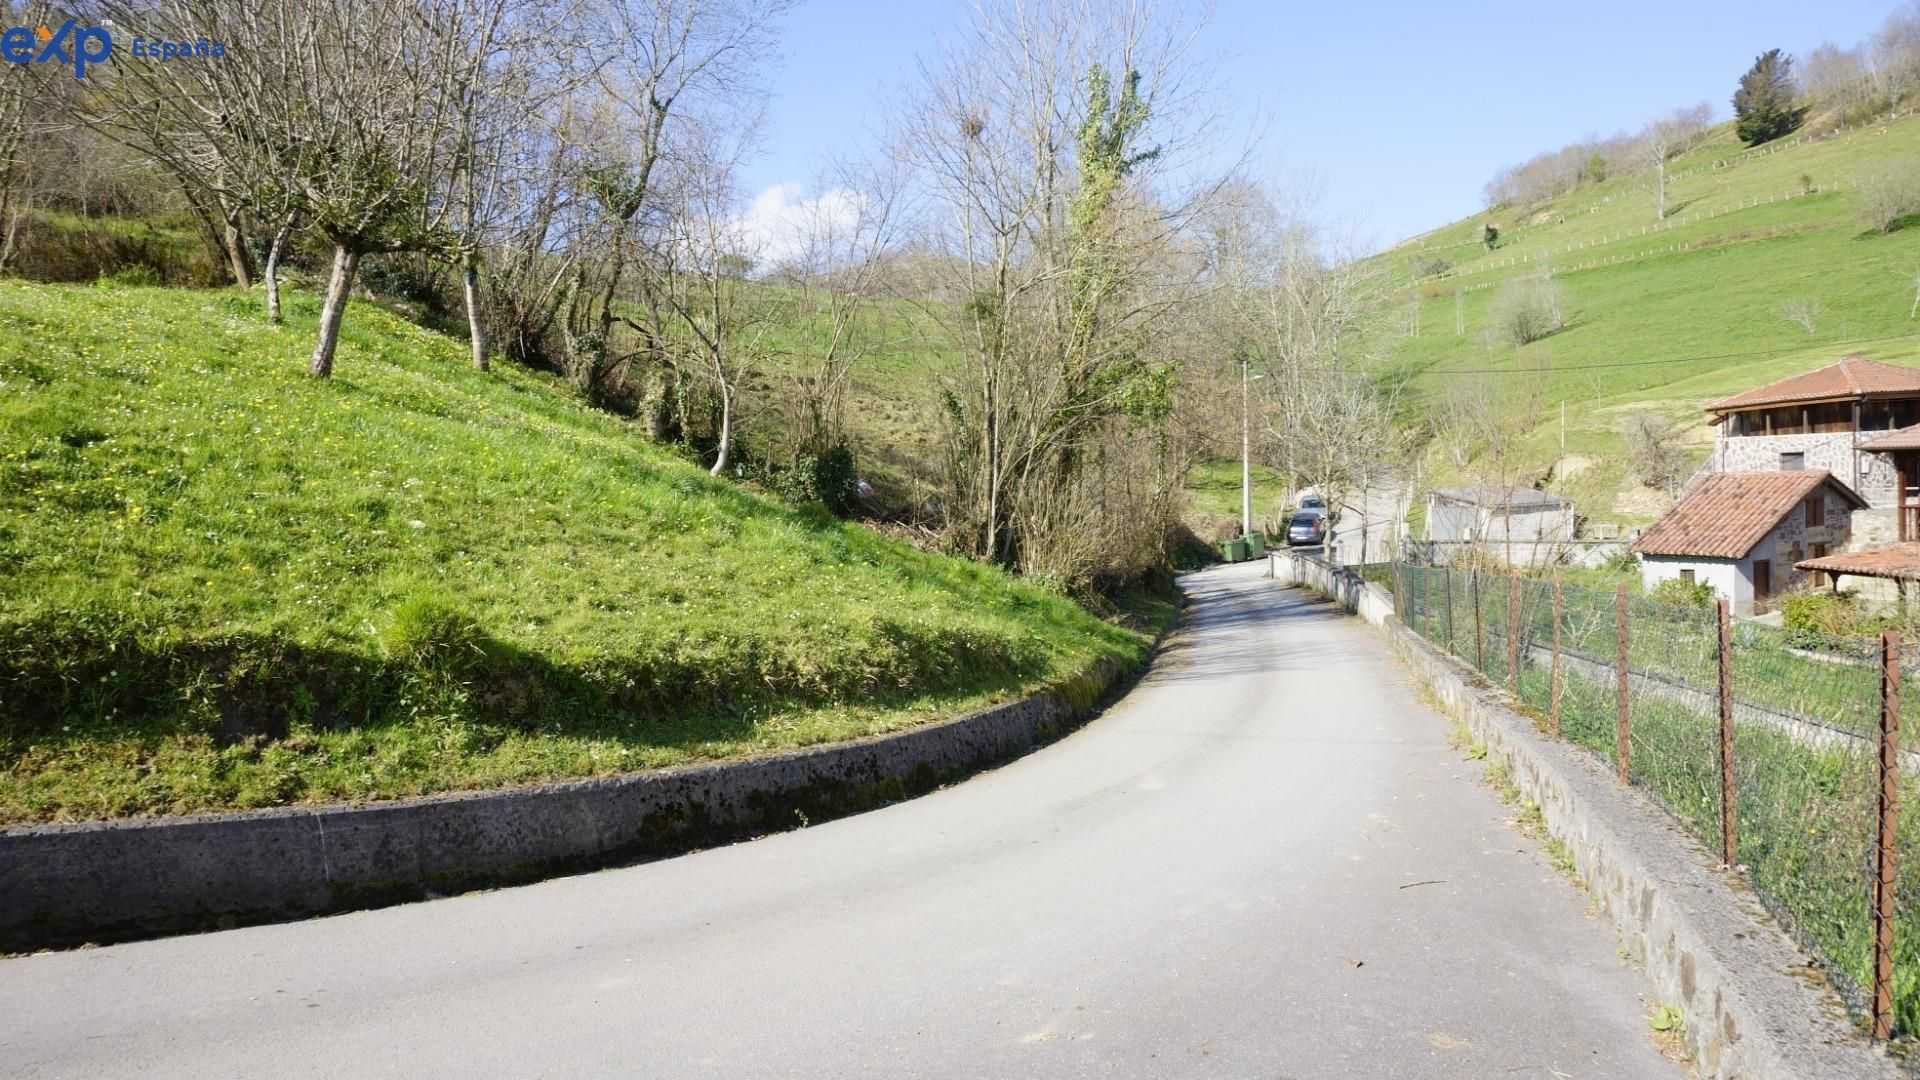 Sbarcare nel Cangas de Onís, Asturias 11633610